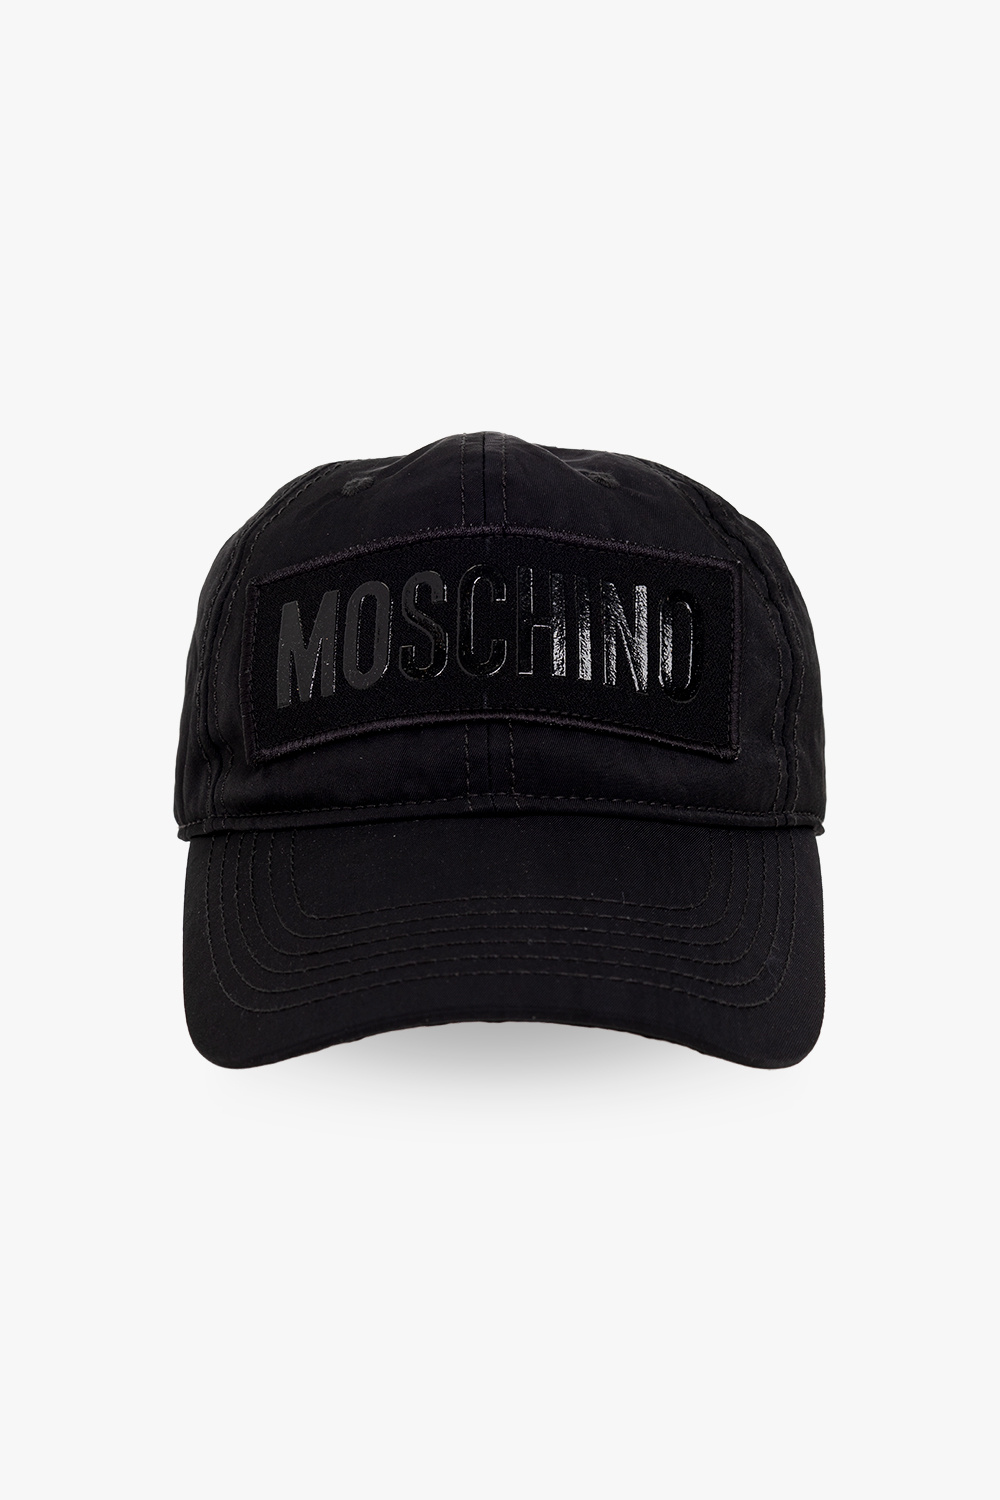 Moschino Cap 1900671 Phantom Men\'s WOLFSKIN cap | | JACK Baseball Baseball Accessories Cap | IetpShops